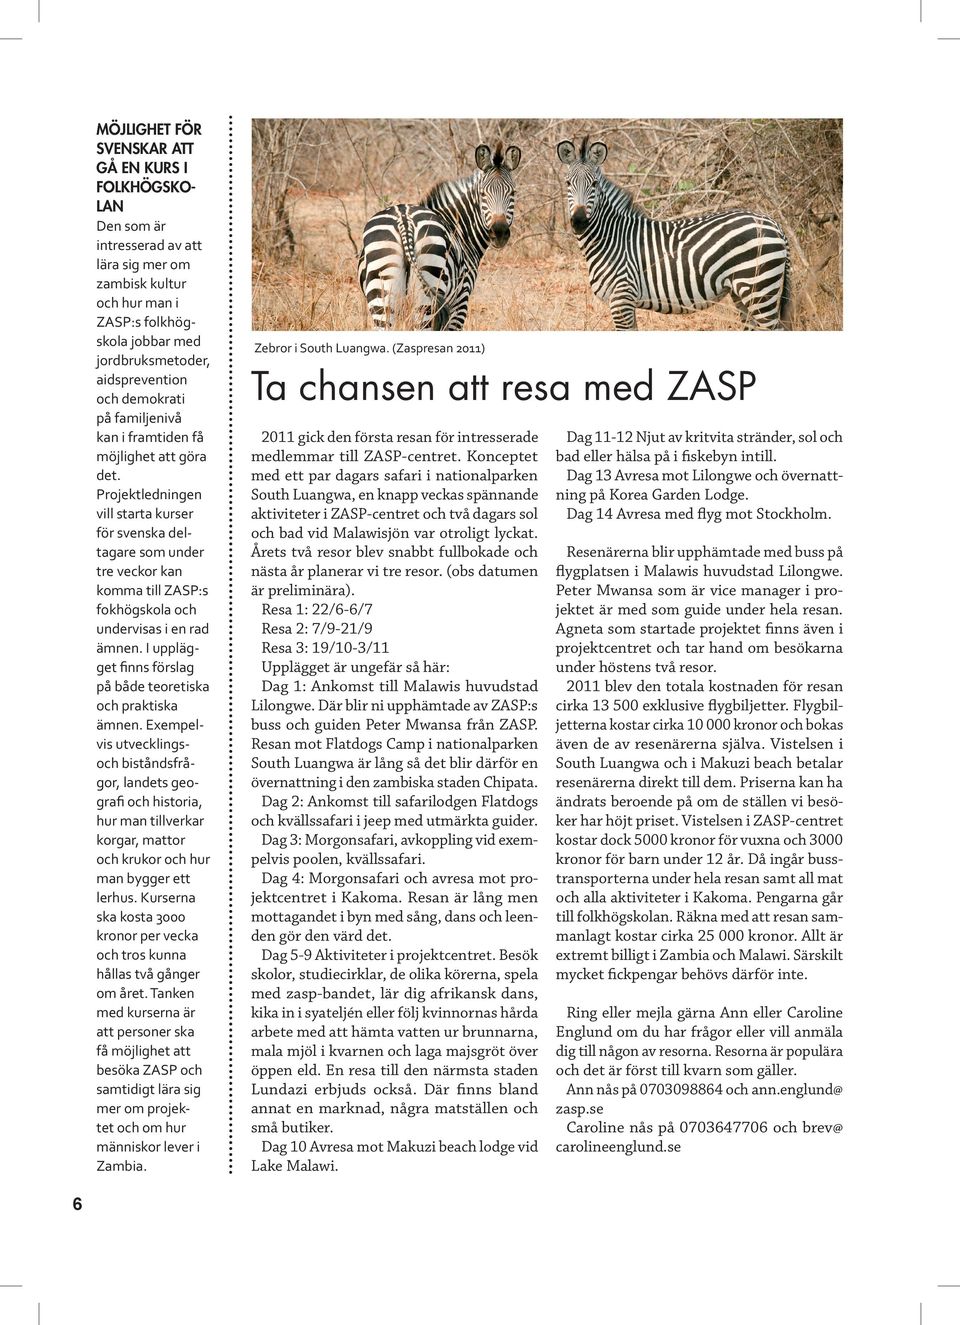 Projektledningen vill starta kurser för svenska deltagare som under tre veckor kan komma till ZASP:s fokhögskola och undervisas i en rad ämnen.